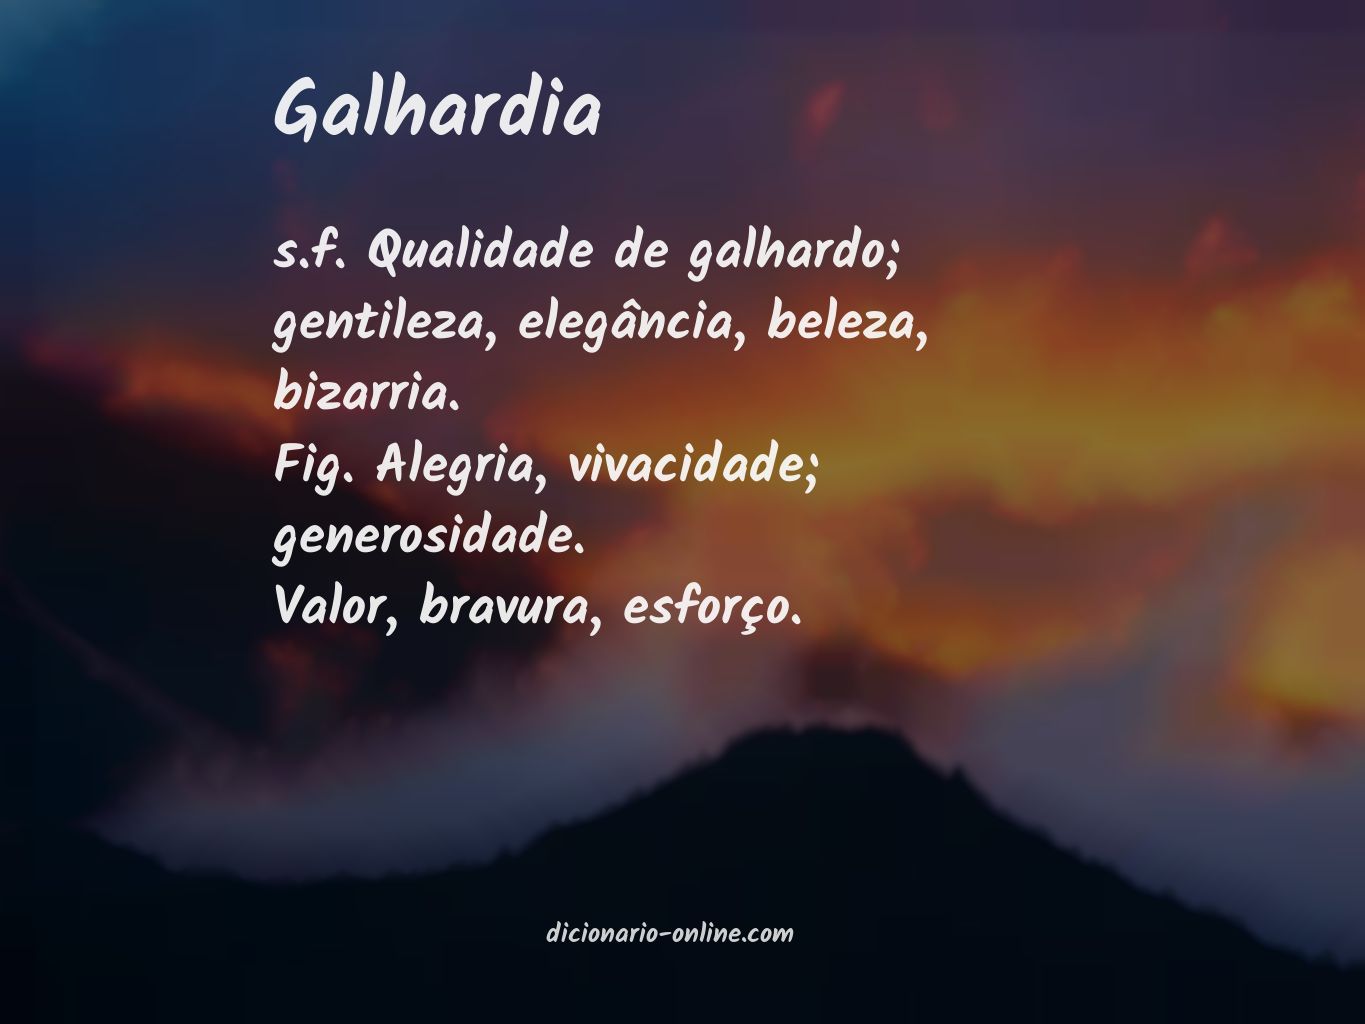 Significado de galhardia